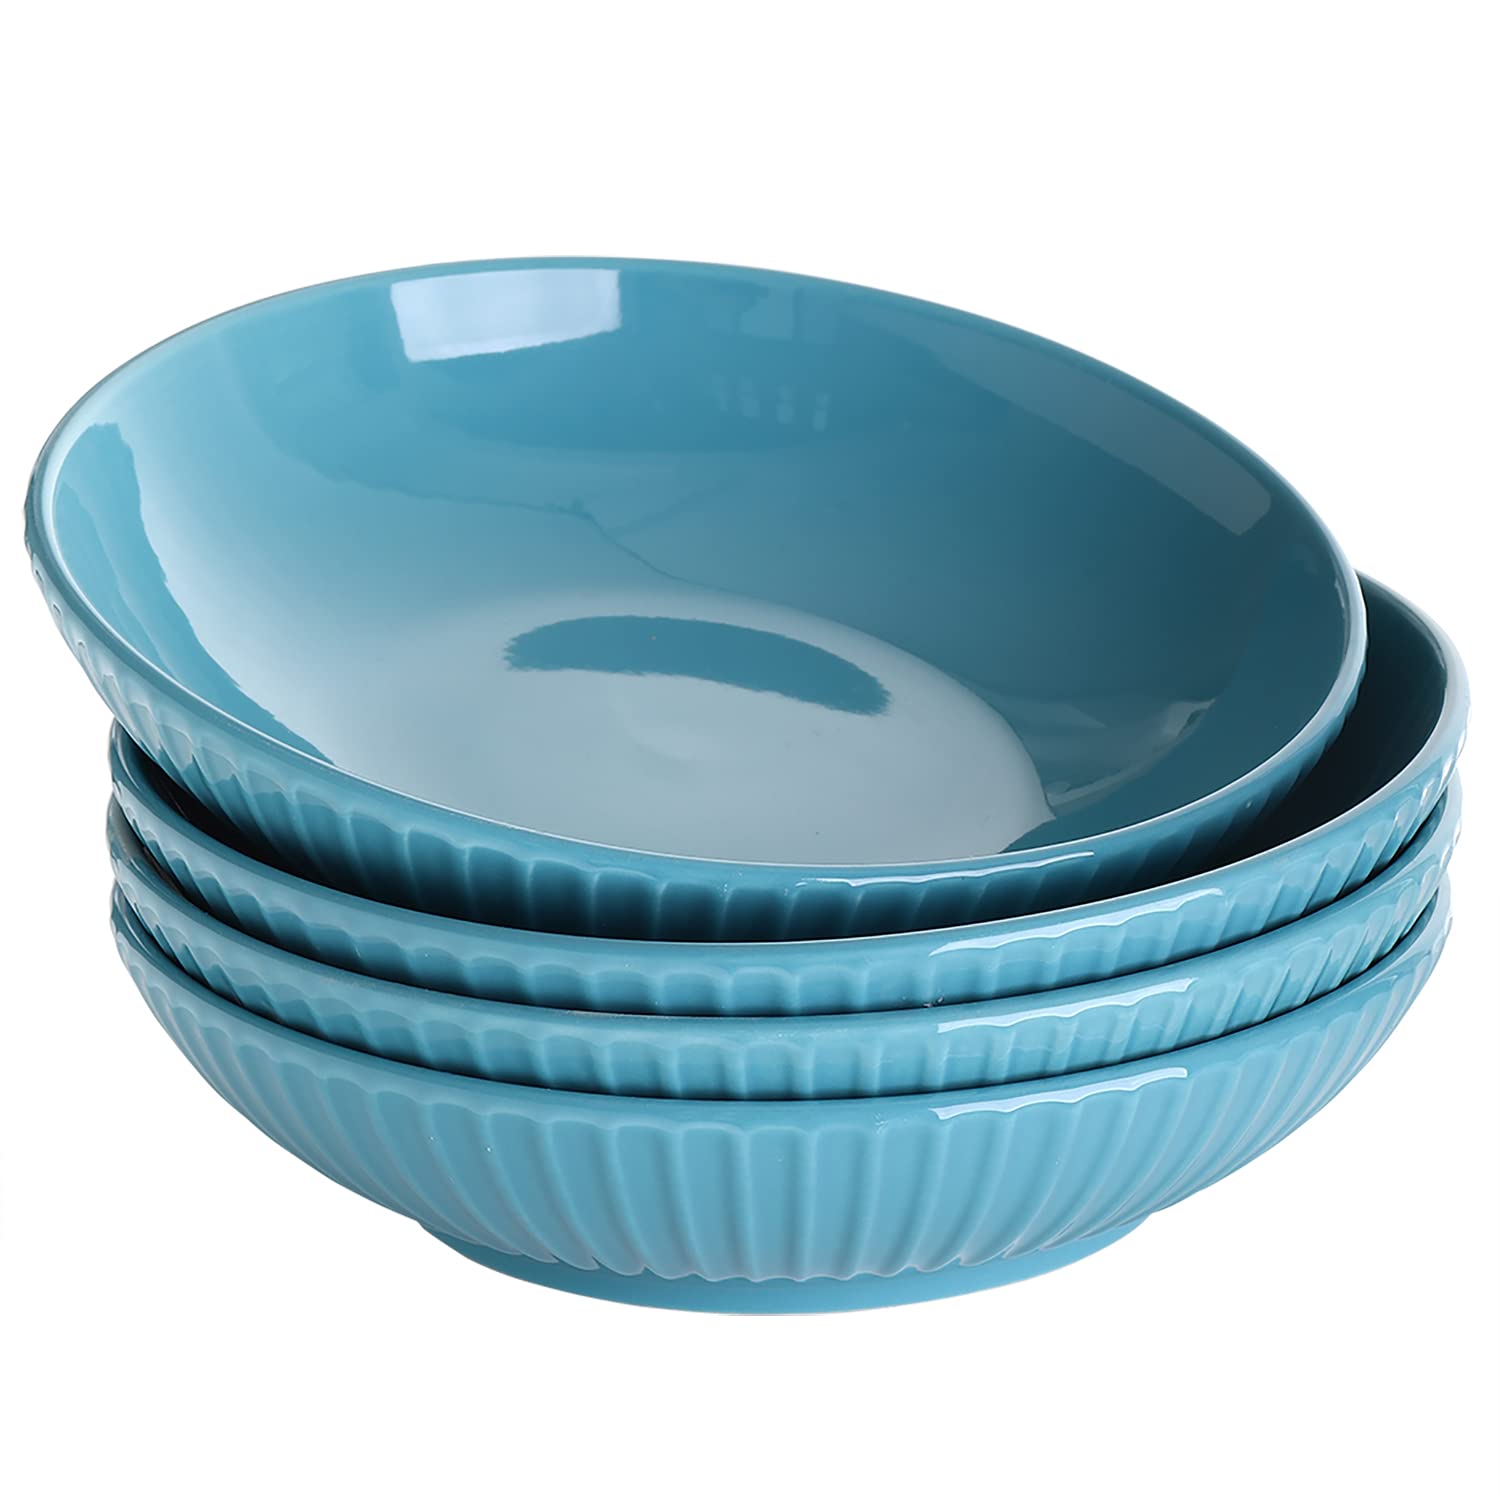 Bestone Pasta Bowls 40oz, Porcelain Embossed Strip Serving Bowls, Large Salad Soup Bowls, Microwave & Dishwasher Safe, Set of 4, Blue